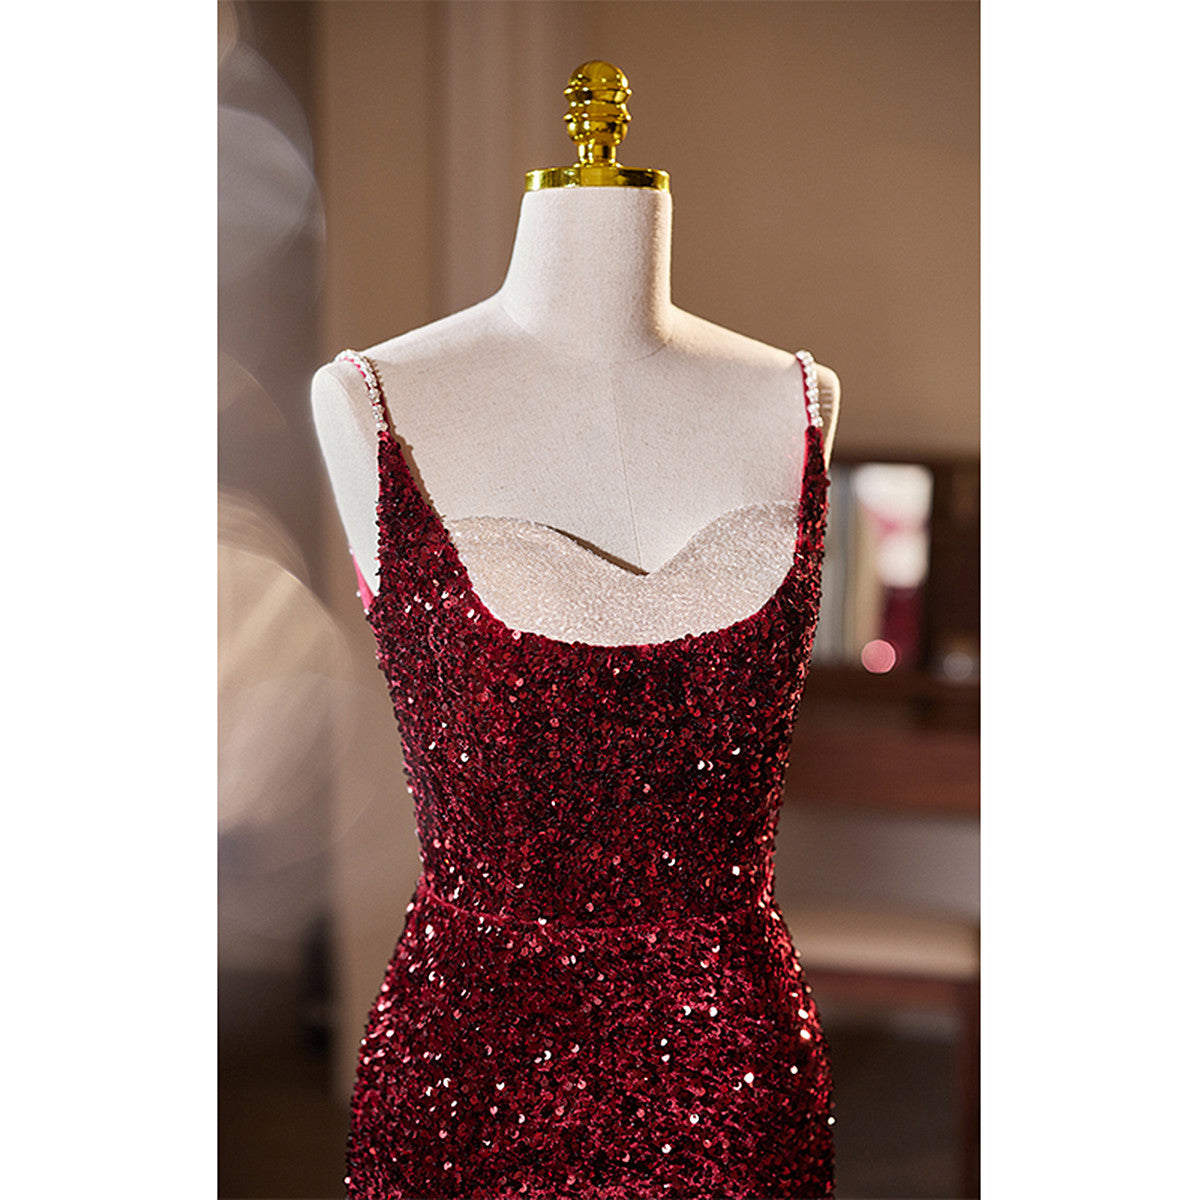 Vintage Dress, Wine Red Sequins Mermaid Long Formal Dress, Wine Red Evening Dress Party Dress